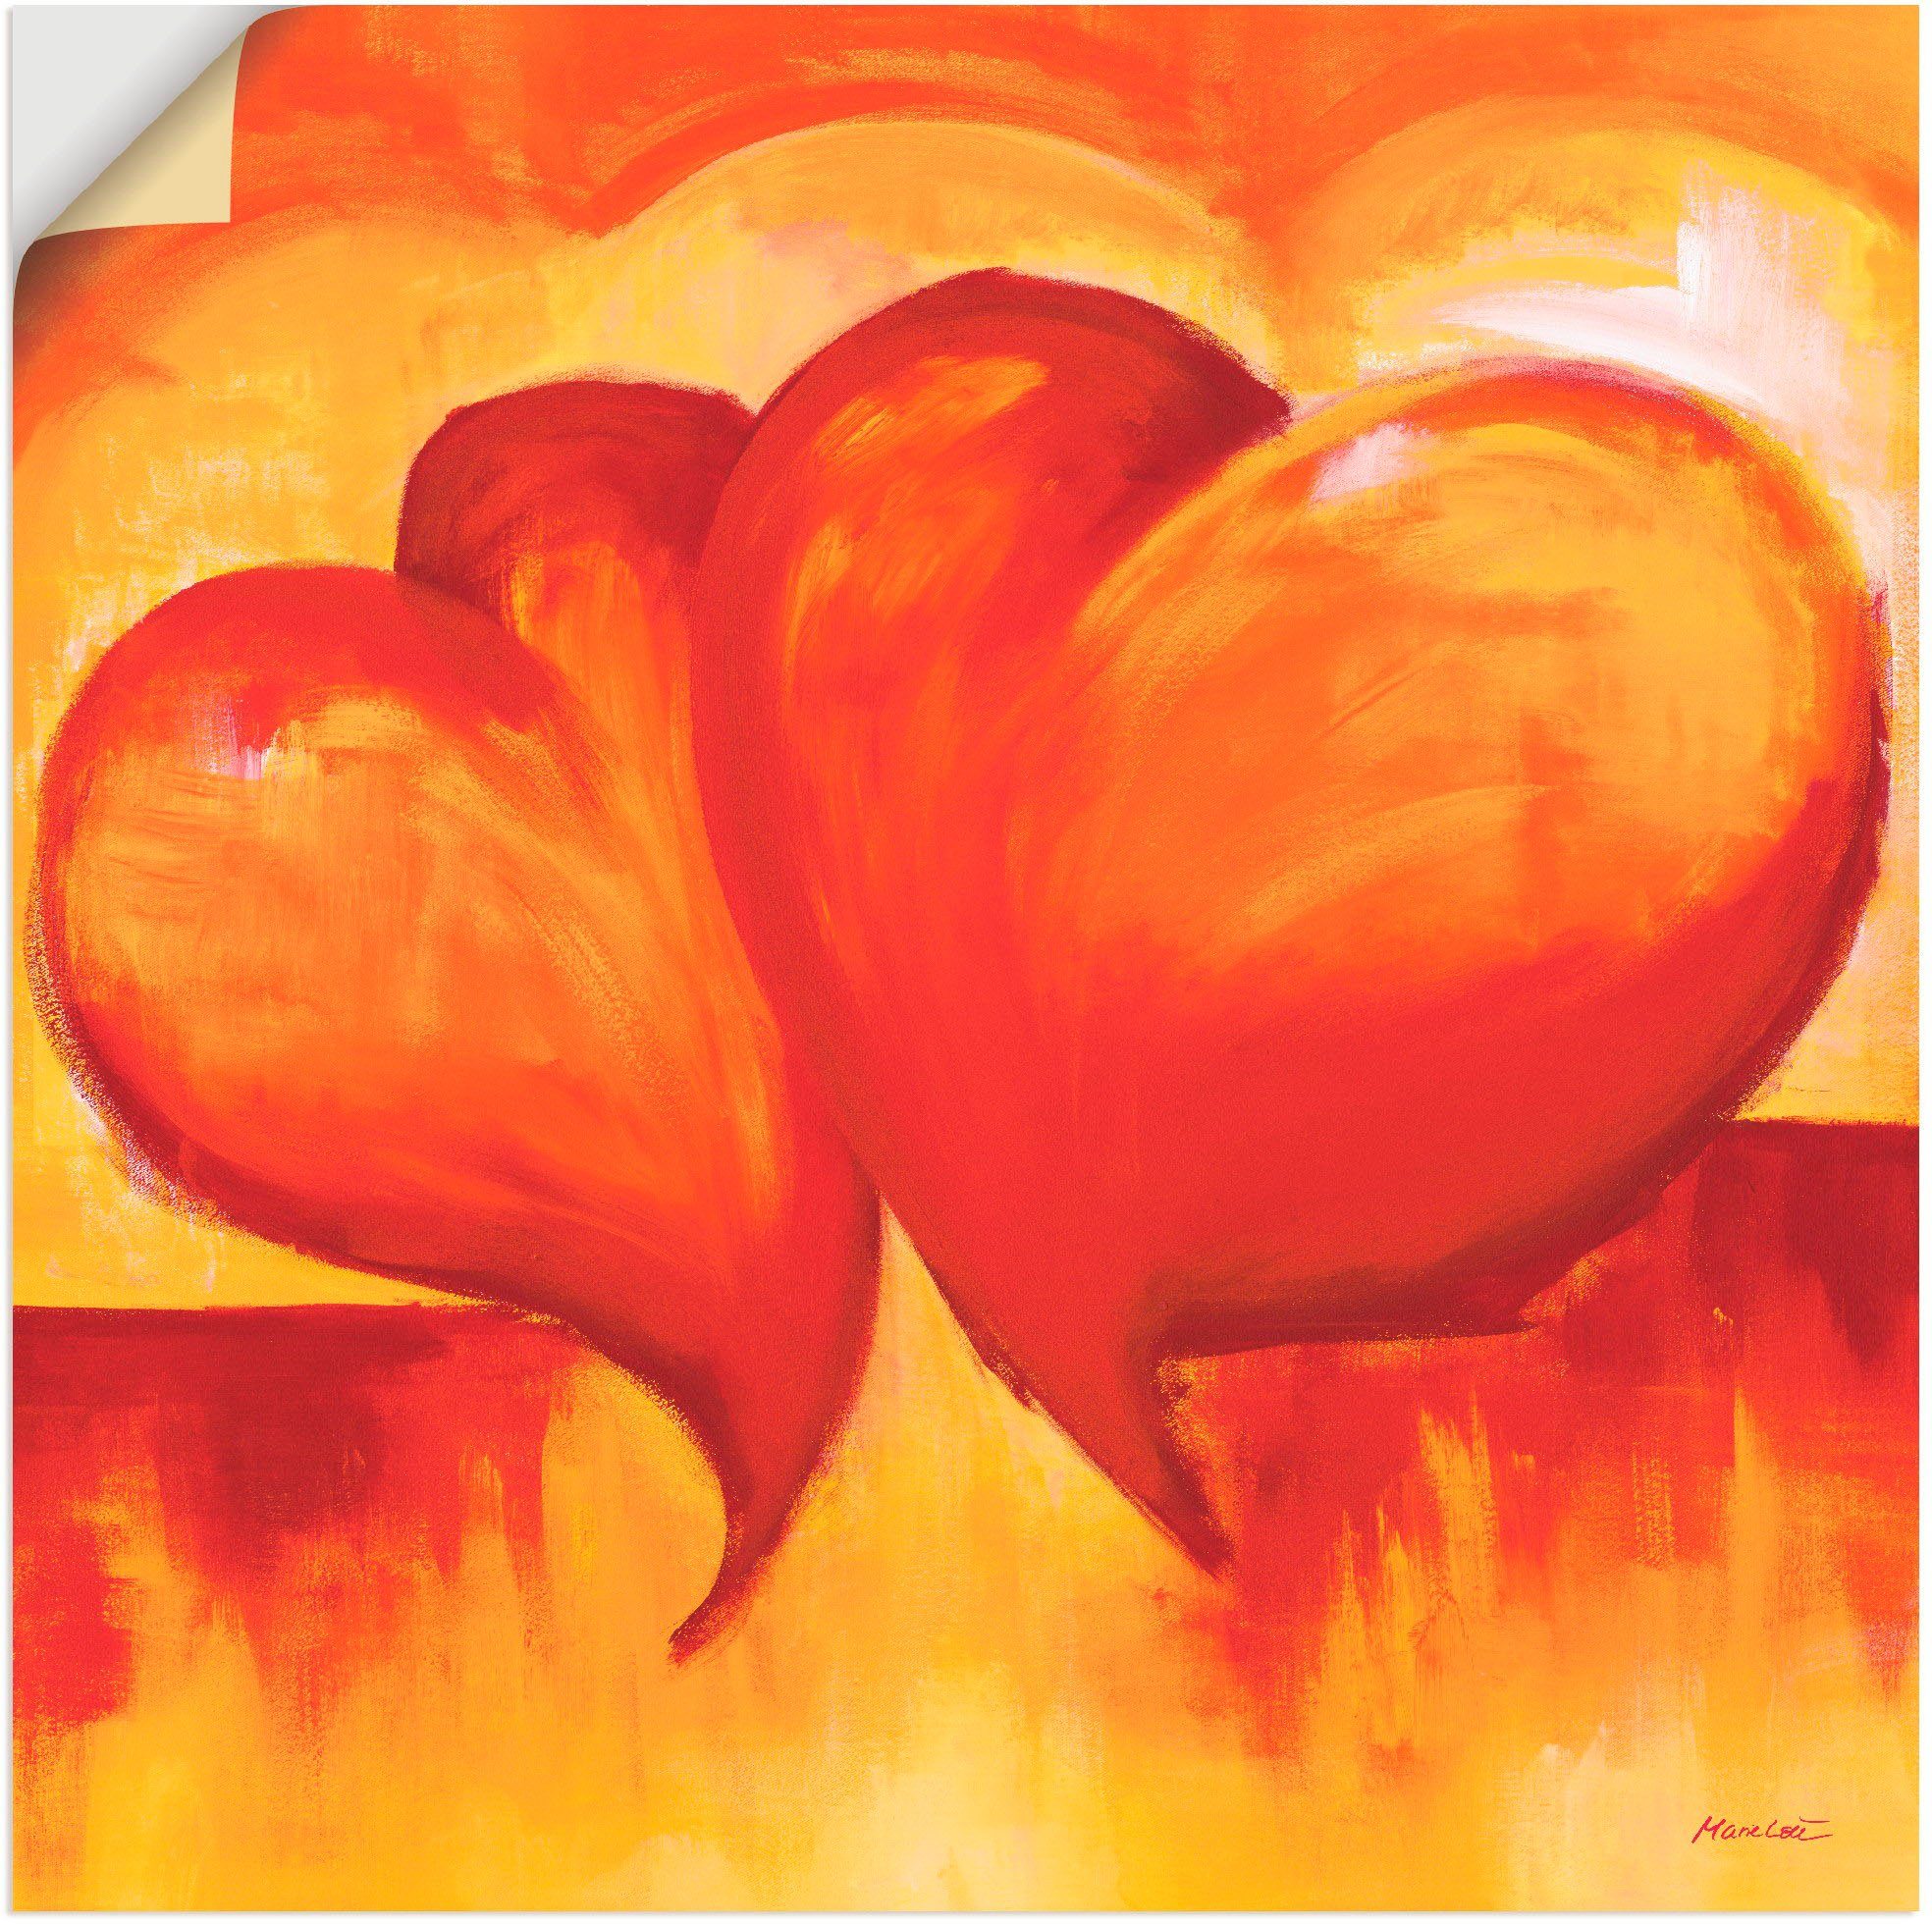 Artland Artprint Abstracte harten - oranje in vele afmetingen & productsoorten - artprint van aluminium / artprint voor buiten, artprint op linnen, poster, muursticker / wandfolie